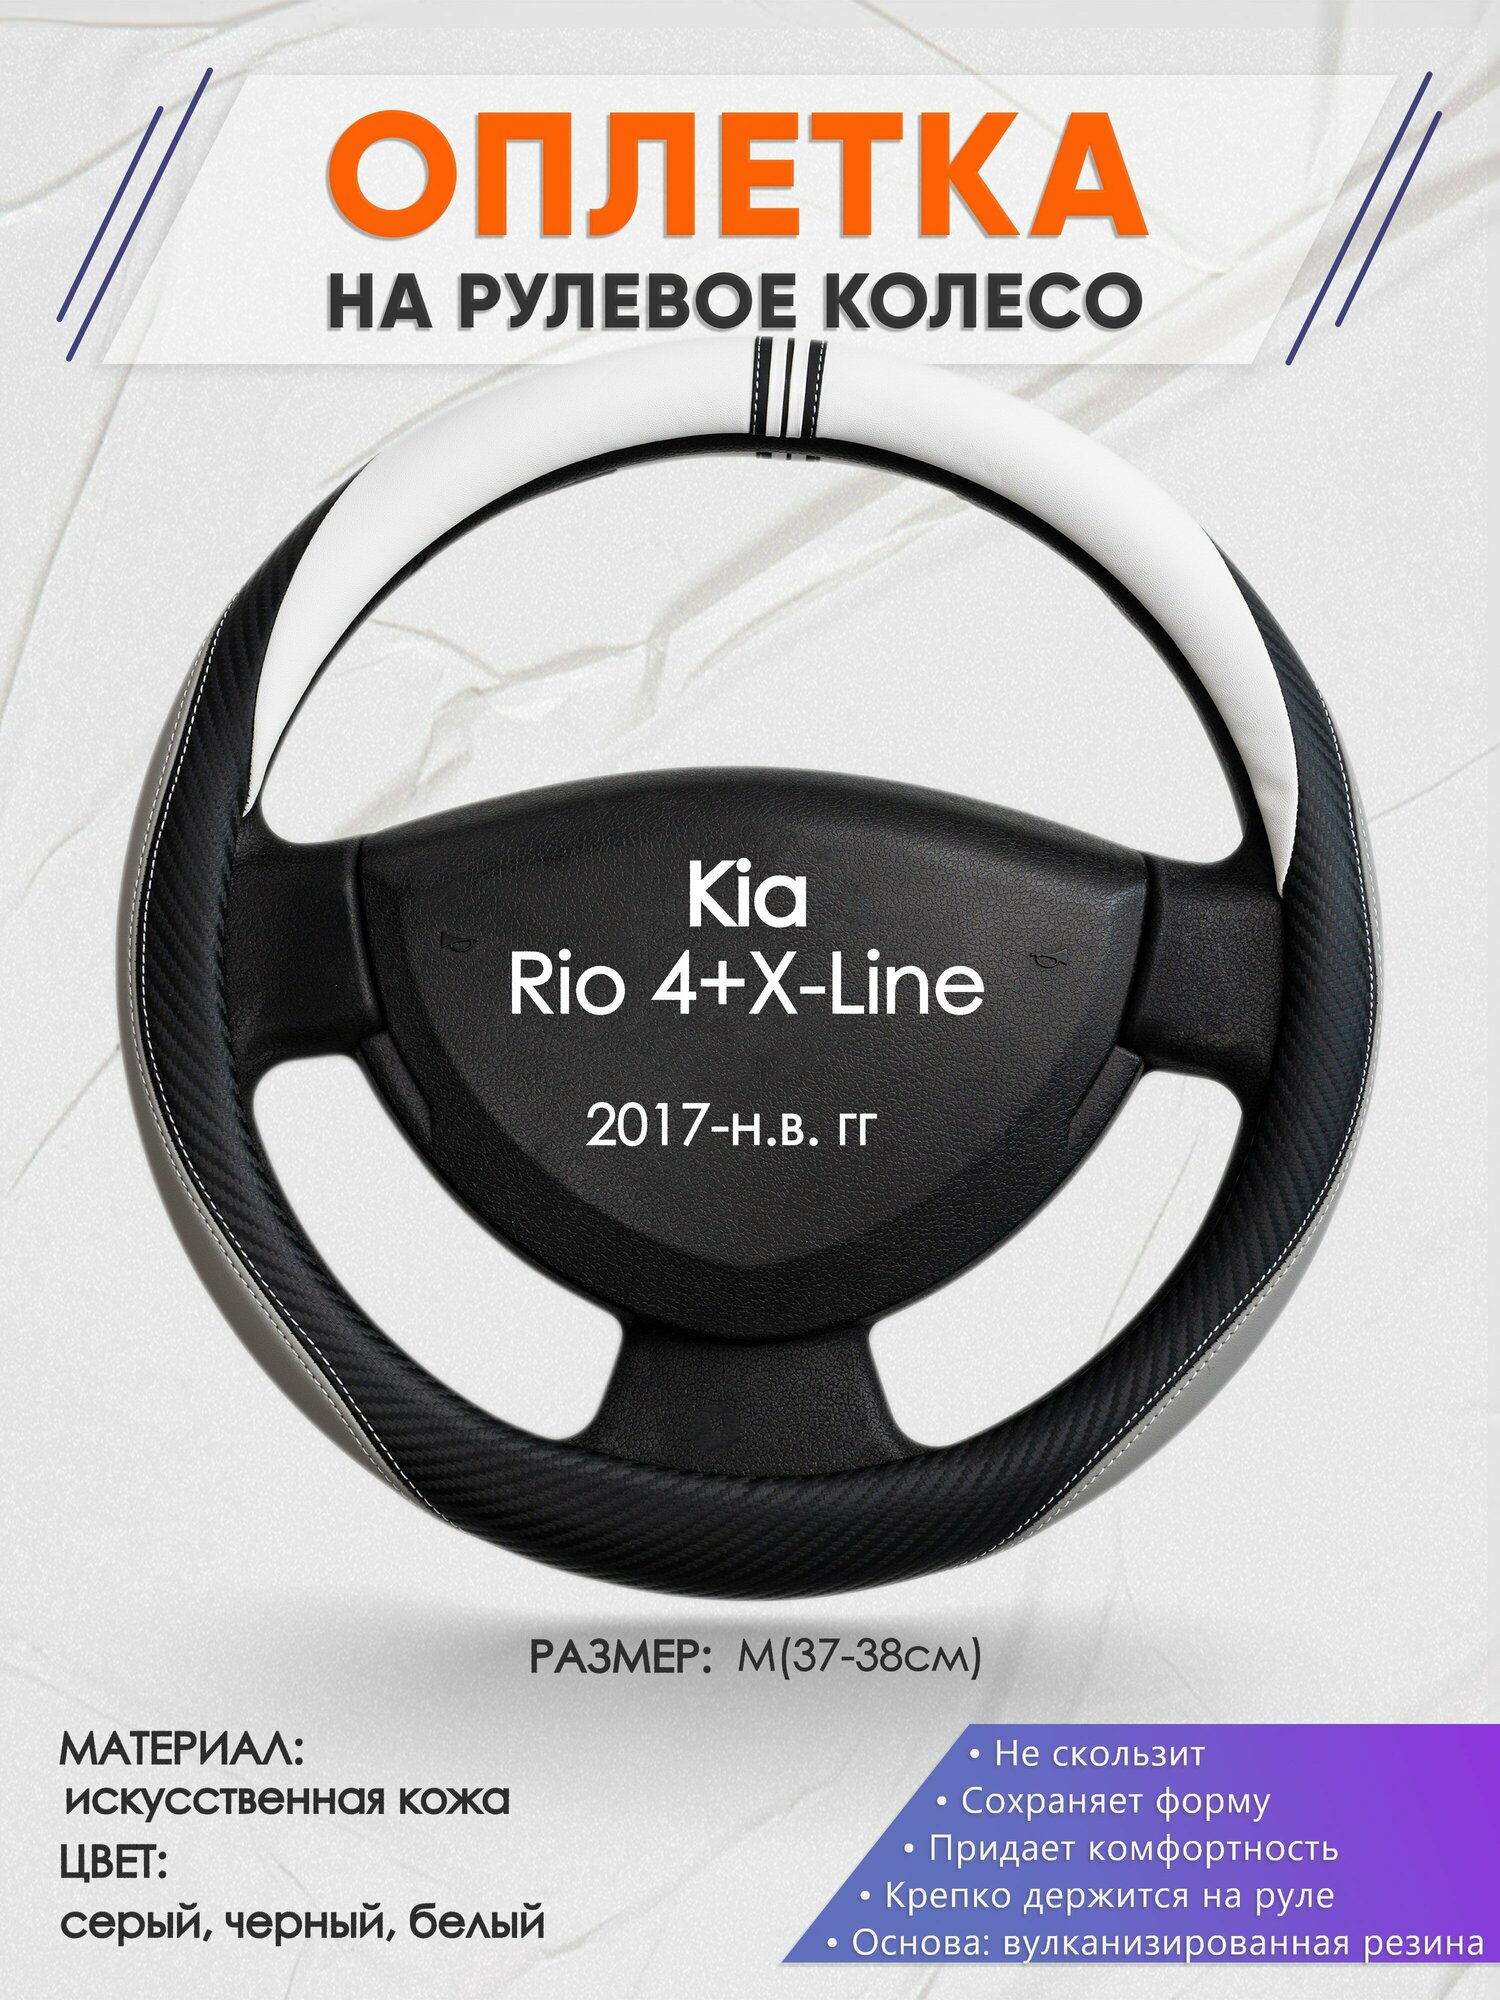 Оплетка на руль для Kia Rio 4+X-Line(Киа Рио 4 / Икс Лайн) 2017-н. в, M(37-38см), Искусственная кожа 58